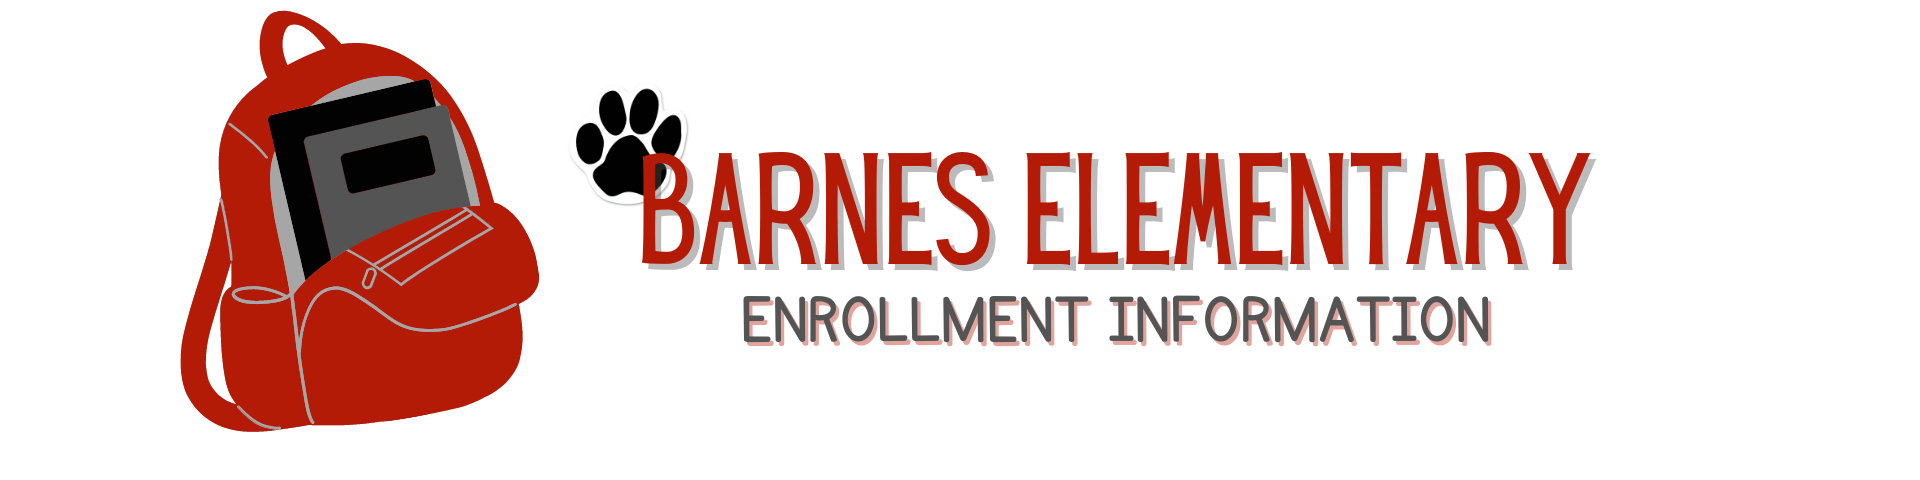 Enrollment Information